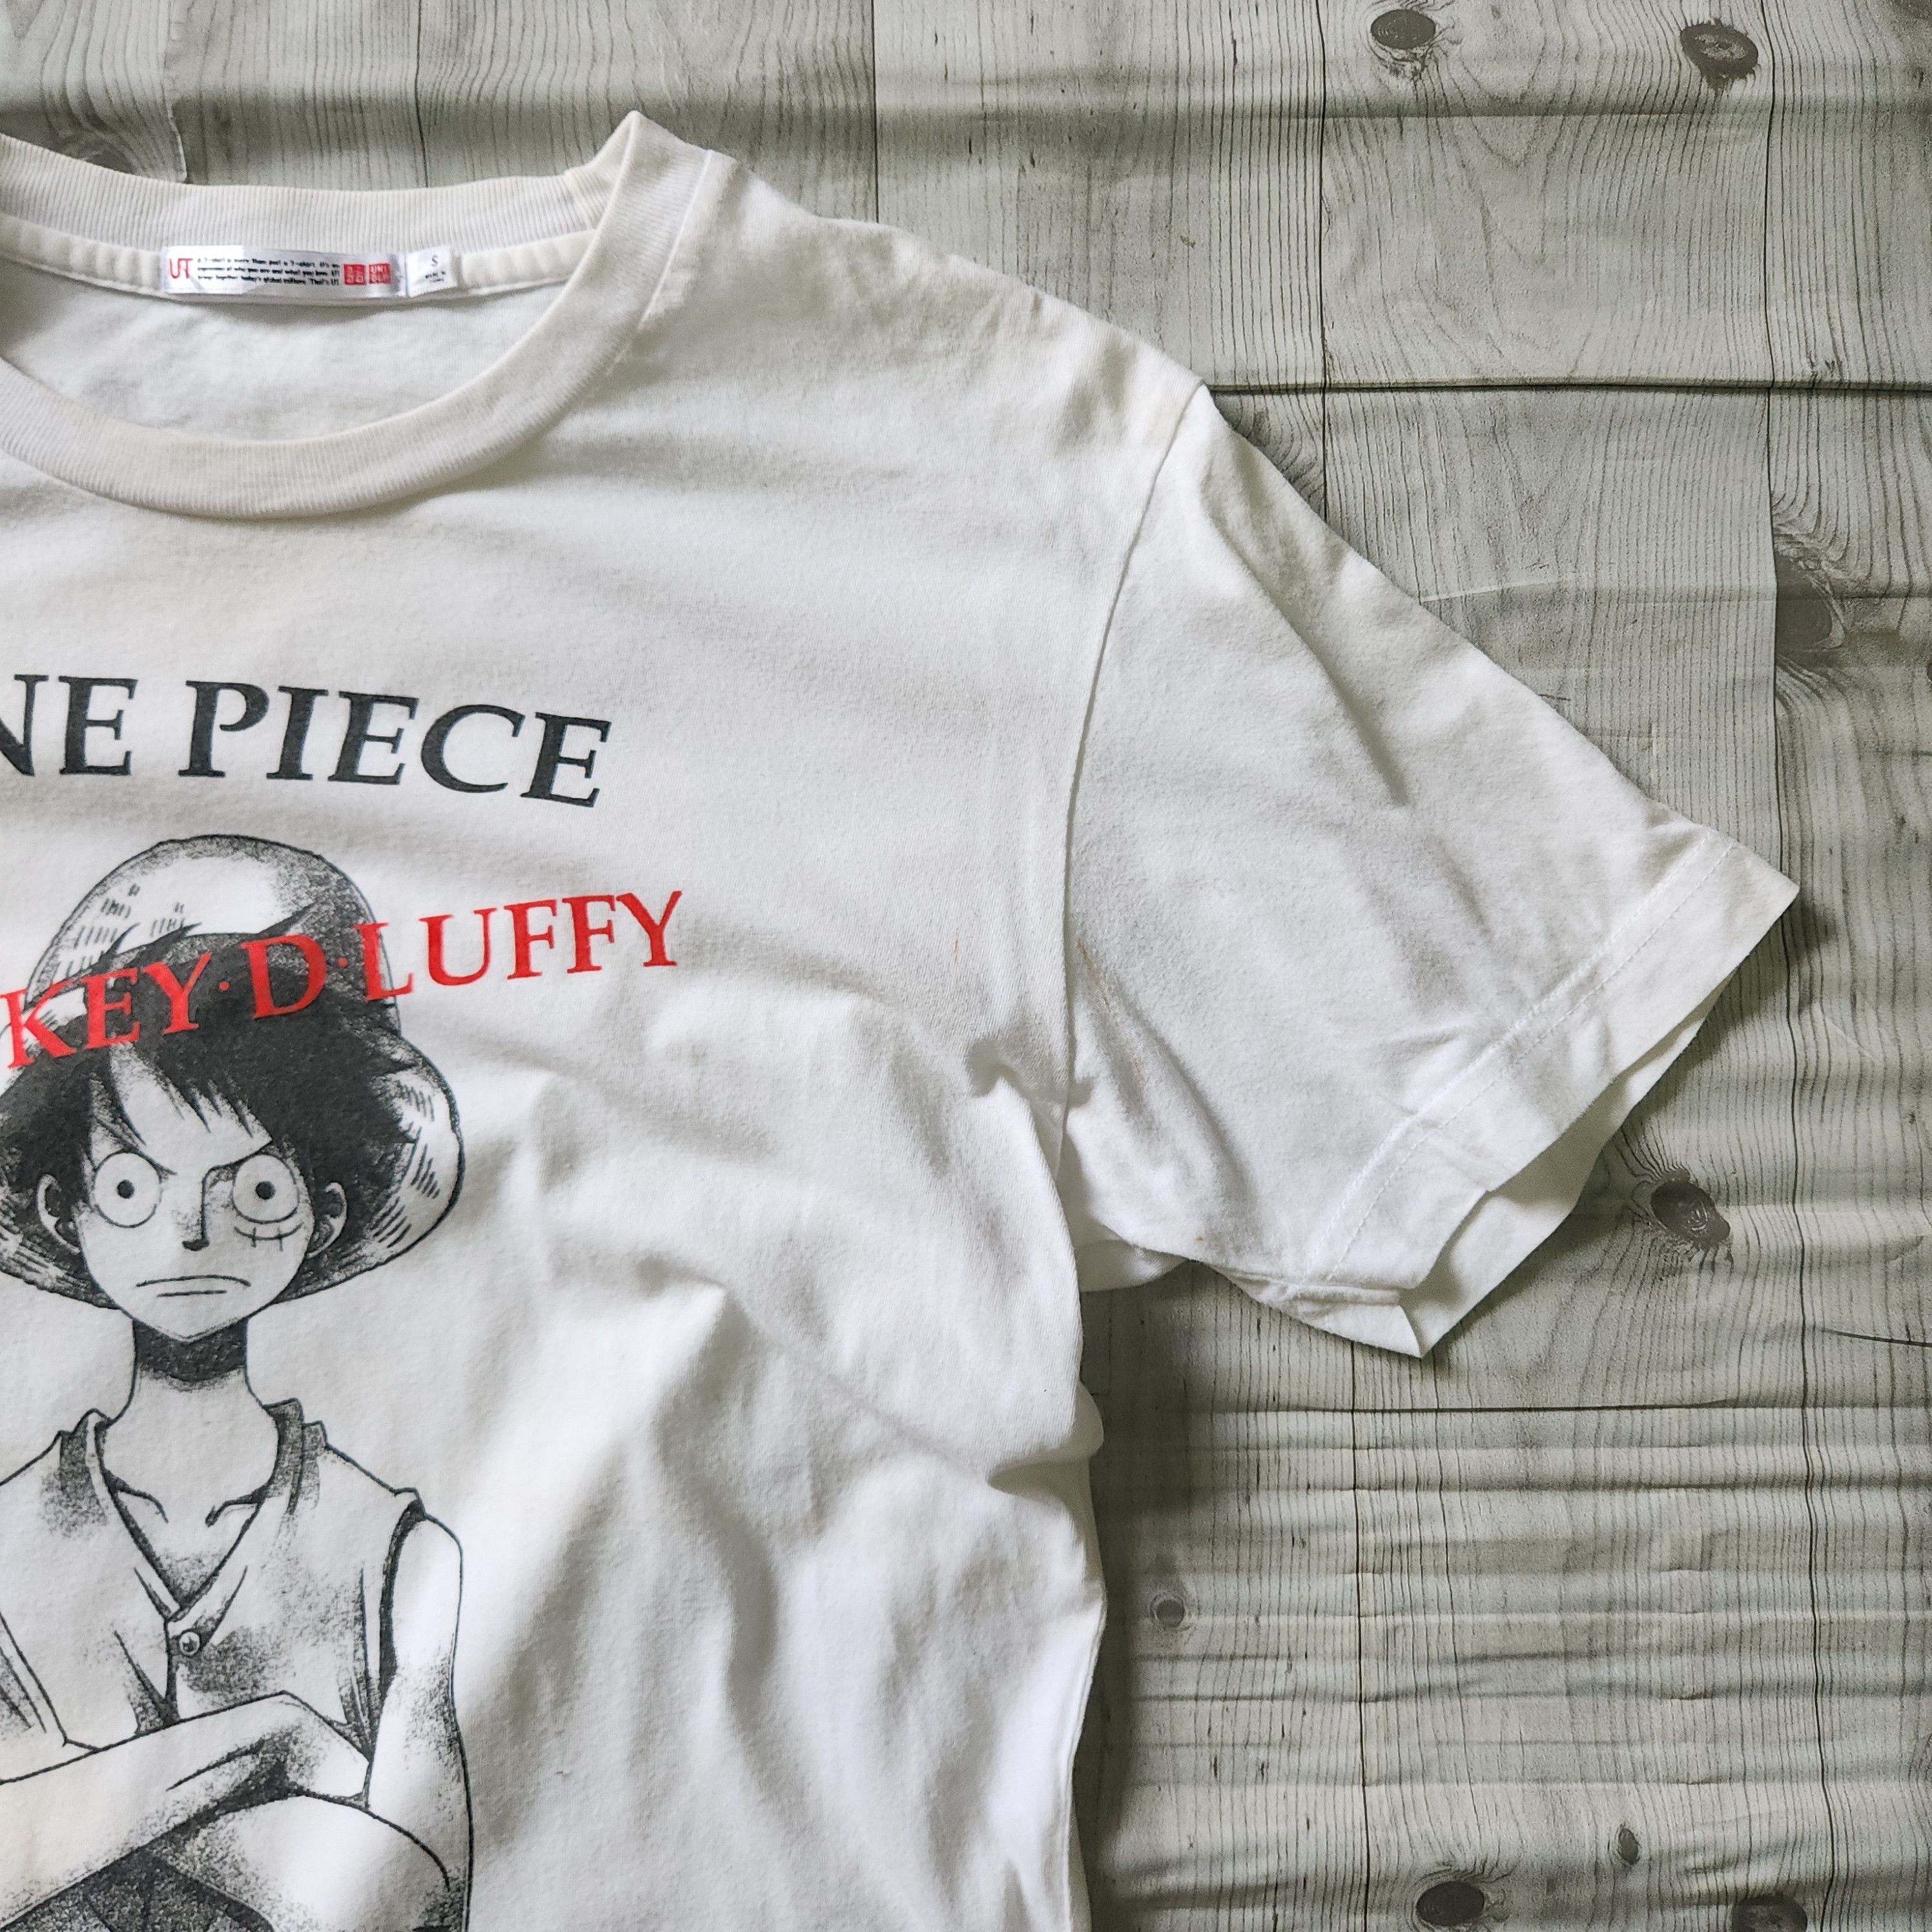 Uniqlo - One Piece Monkey D Luffy Big Printed TShirt - 5